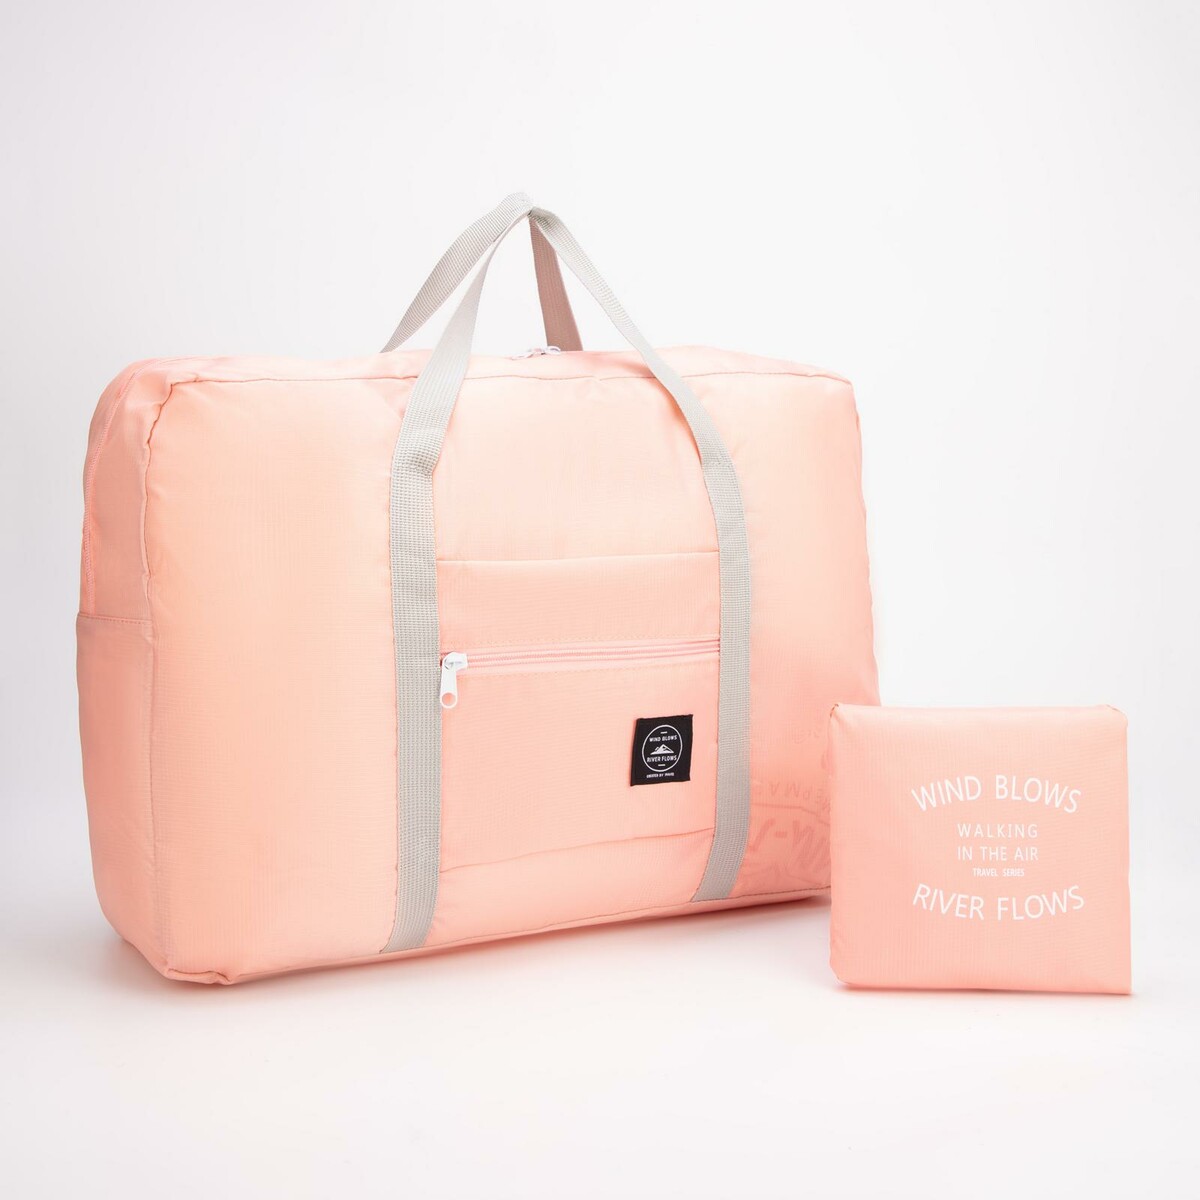 Сумка дорожная, складная, отдел на молнии, держатель для чемодана, наружный карман, цвет розовый держатель для фена 9×9×10 см розовый